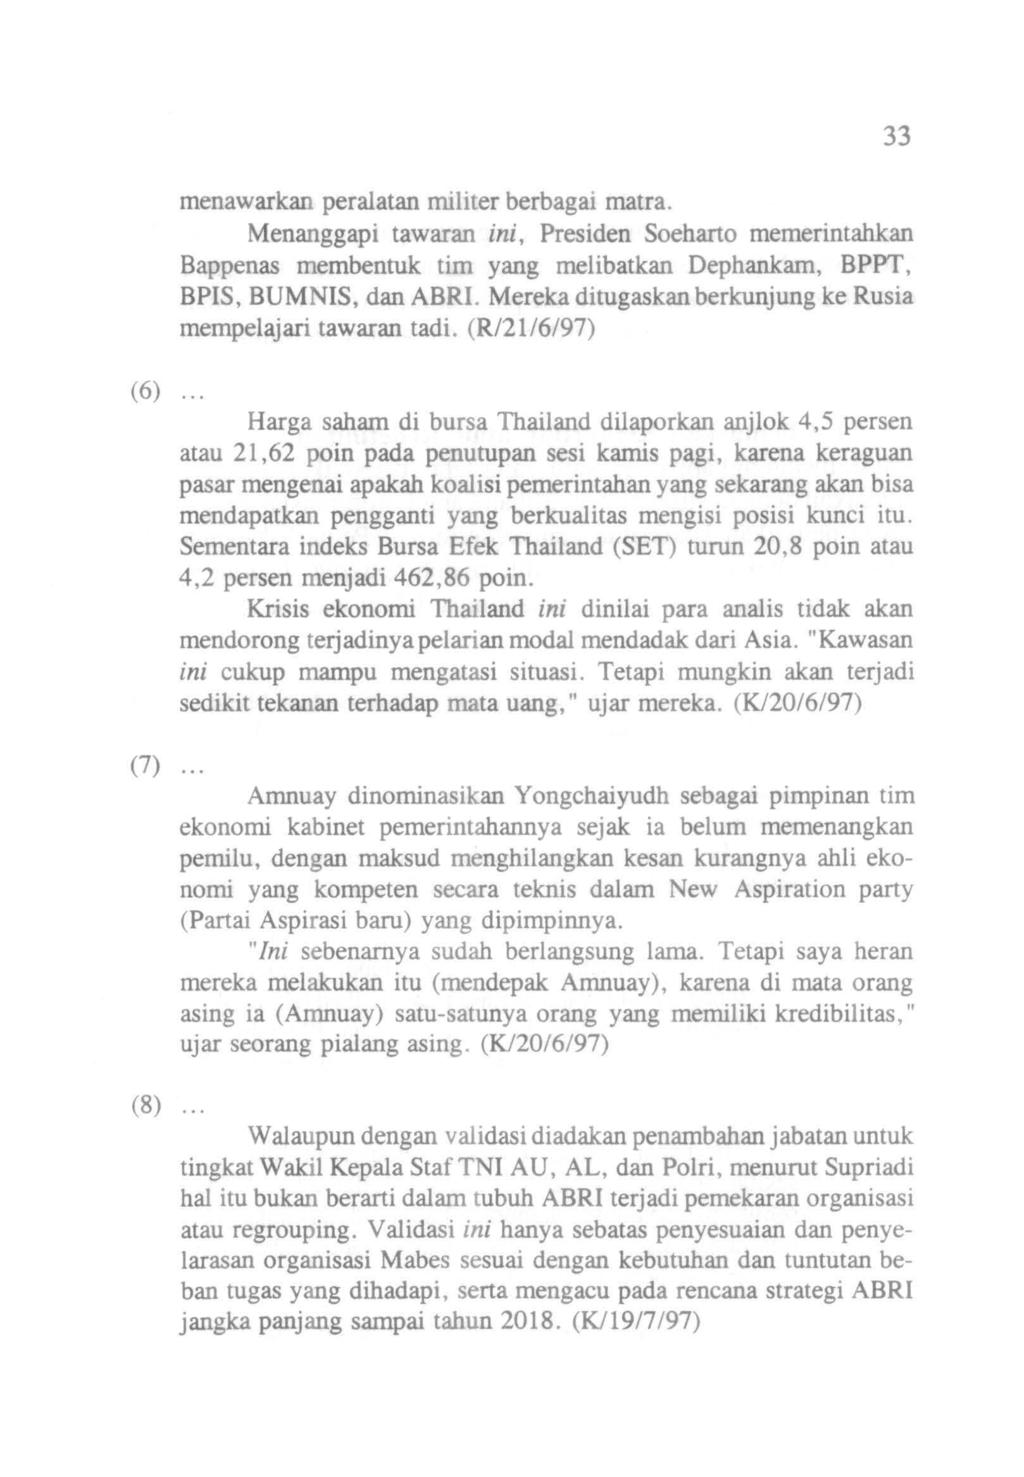 (6) menawarkan peralatan militer berbagai rnatra. Menanggapi tawaran ini, Presiden Soeharto memerintahkan Bappenas membentuk tim yang melibatkan Dephankam, BPPT, BPIS, BUMNIS, dan ABRI.